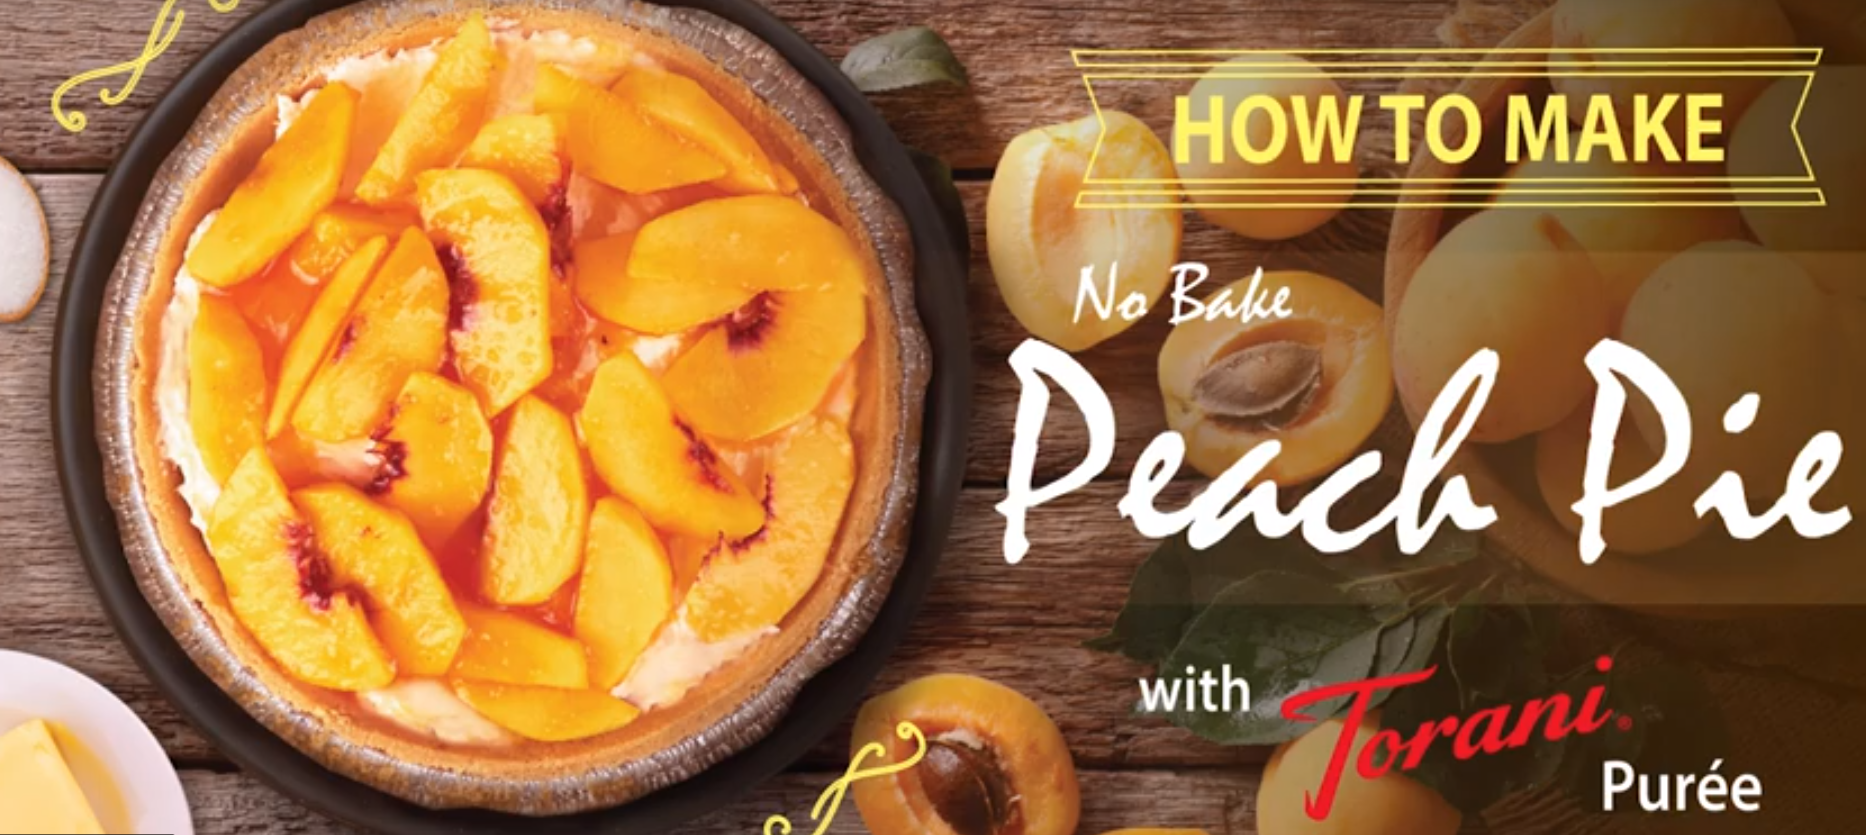 How to Make No Bake Peach Pie ... with Torani Puree!